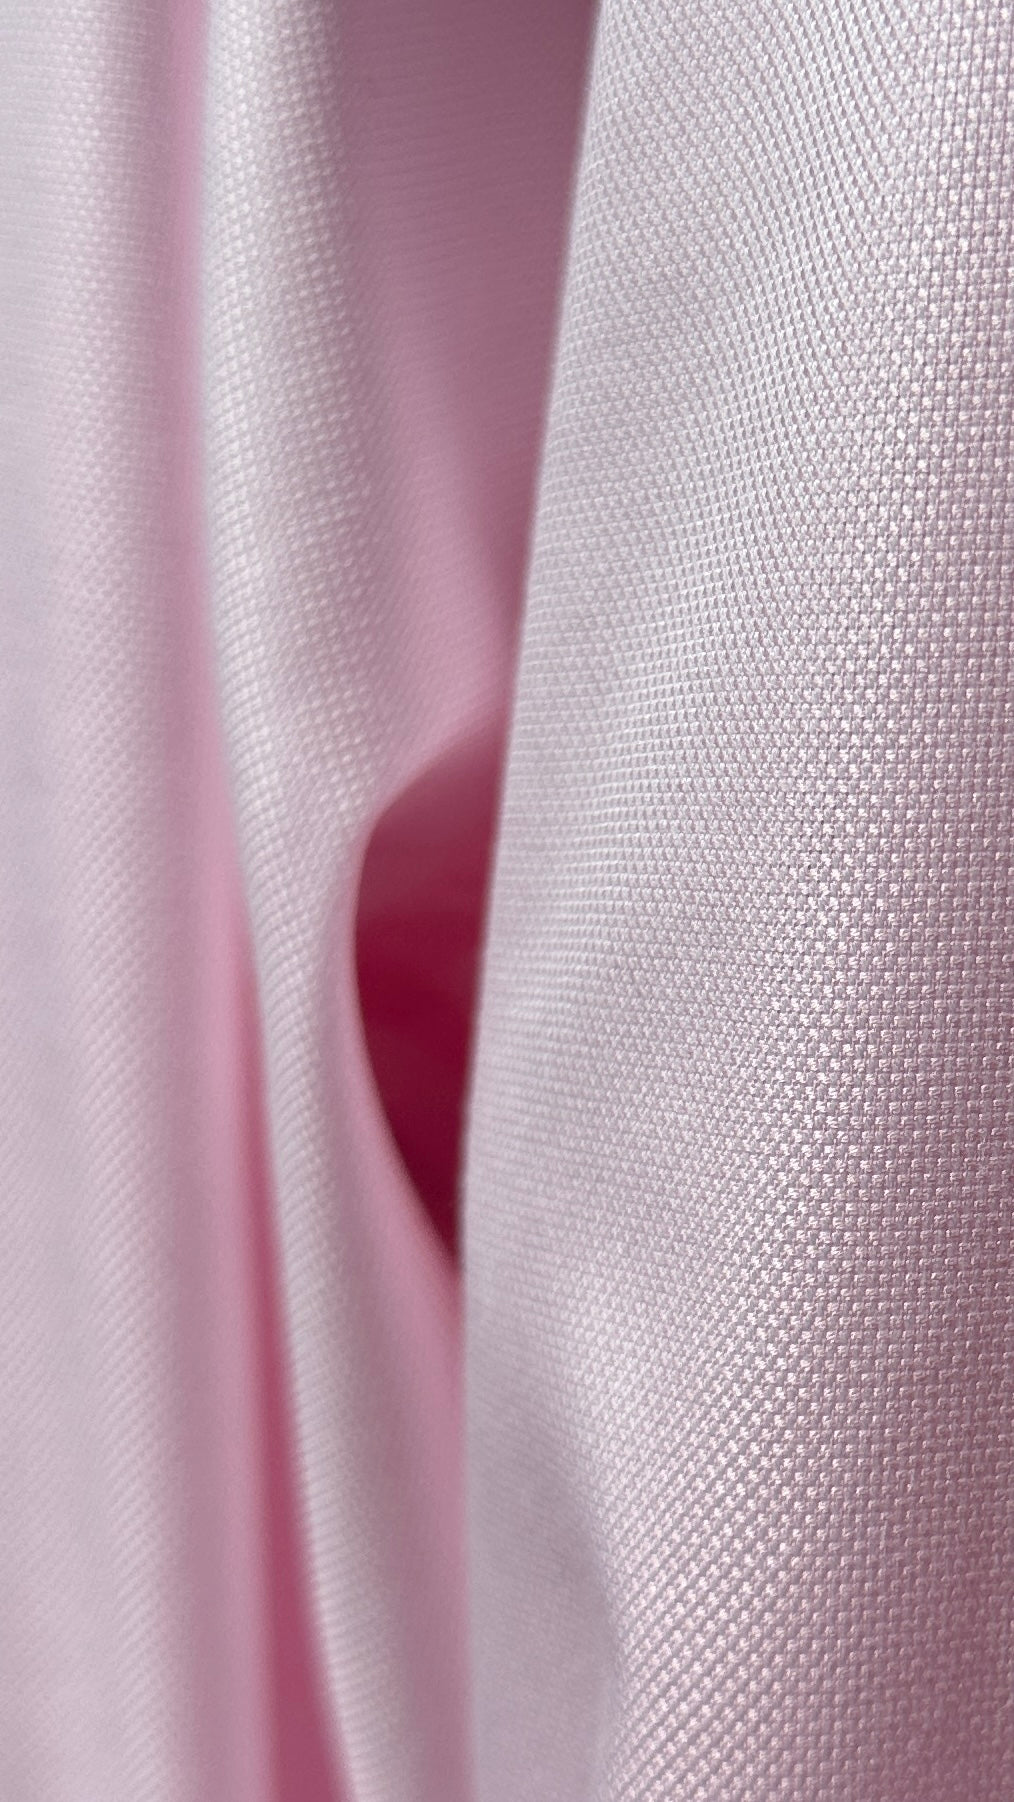 Detailaufnahme vom rosa Hemdenstoff